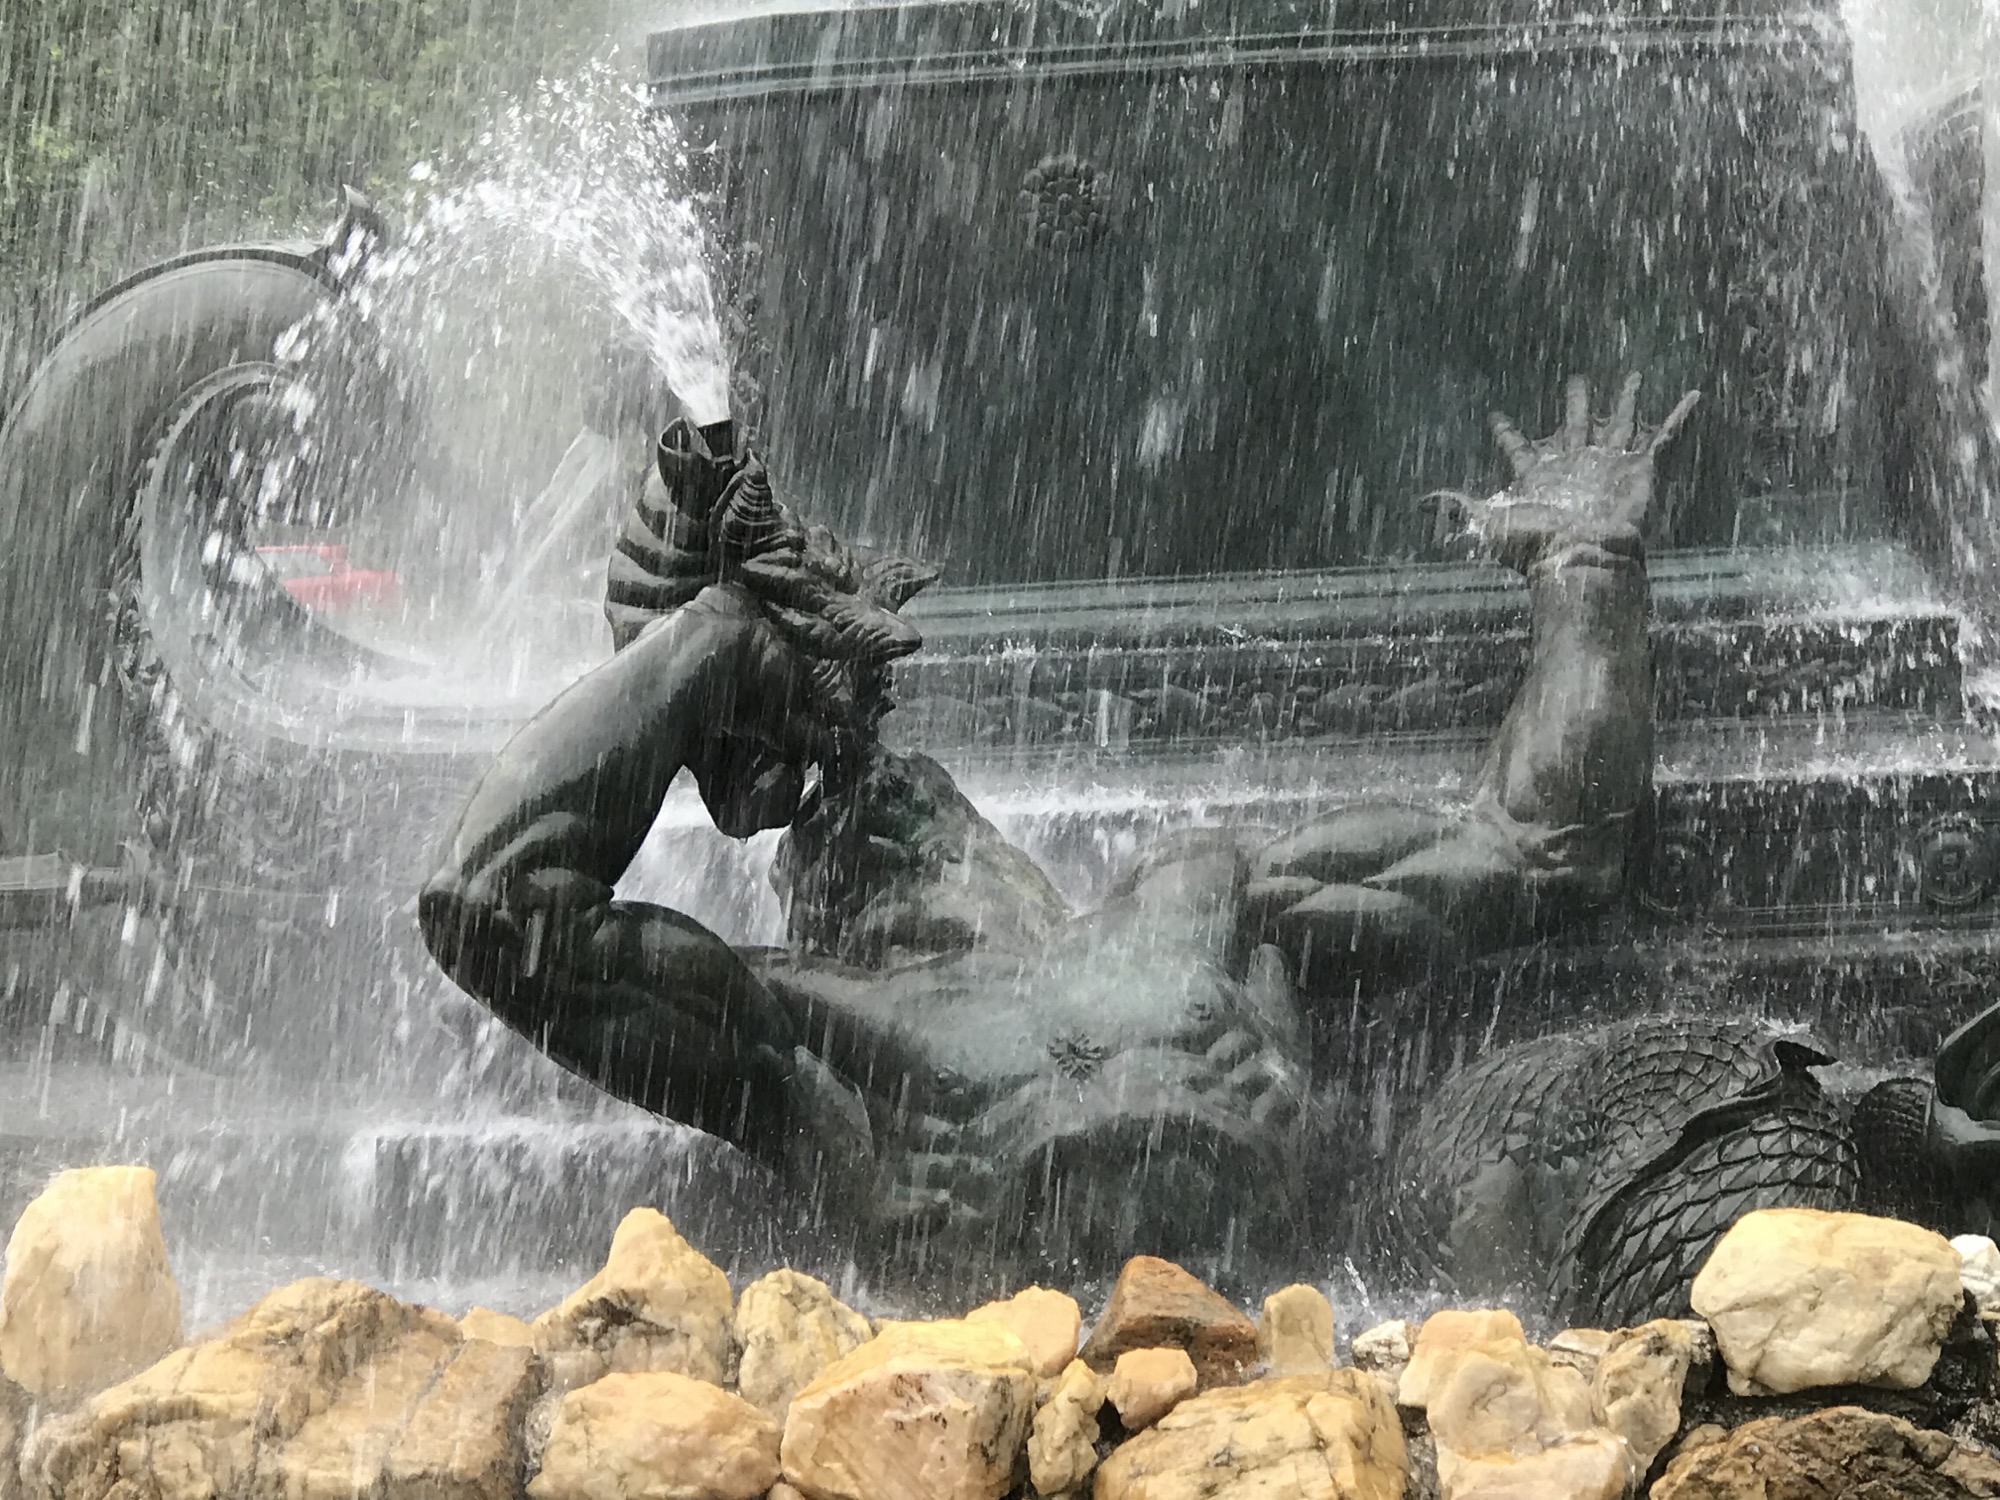 Photos of Bailey Fountain in Grand Army Plaza (Brooklyn, NY).